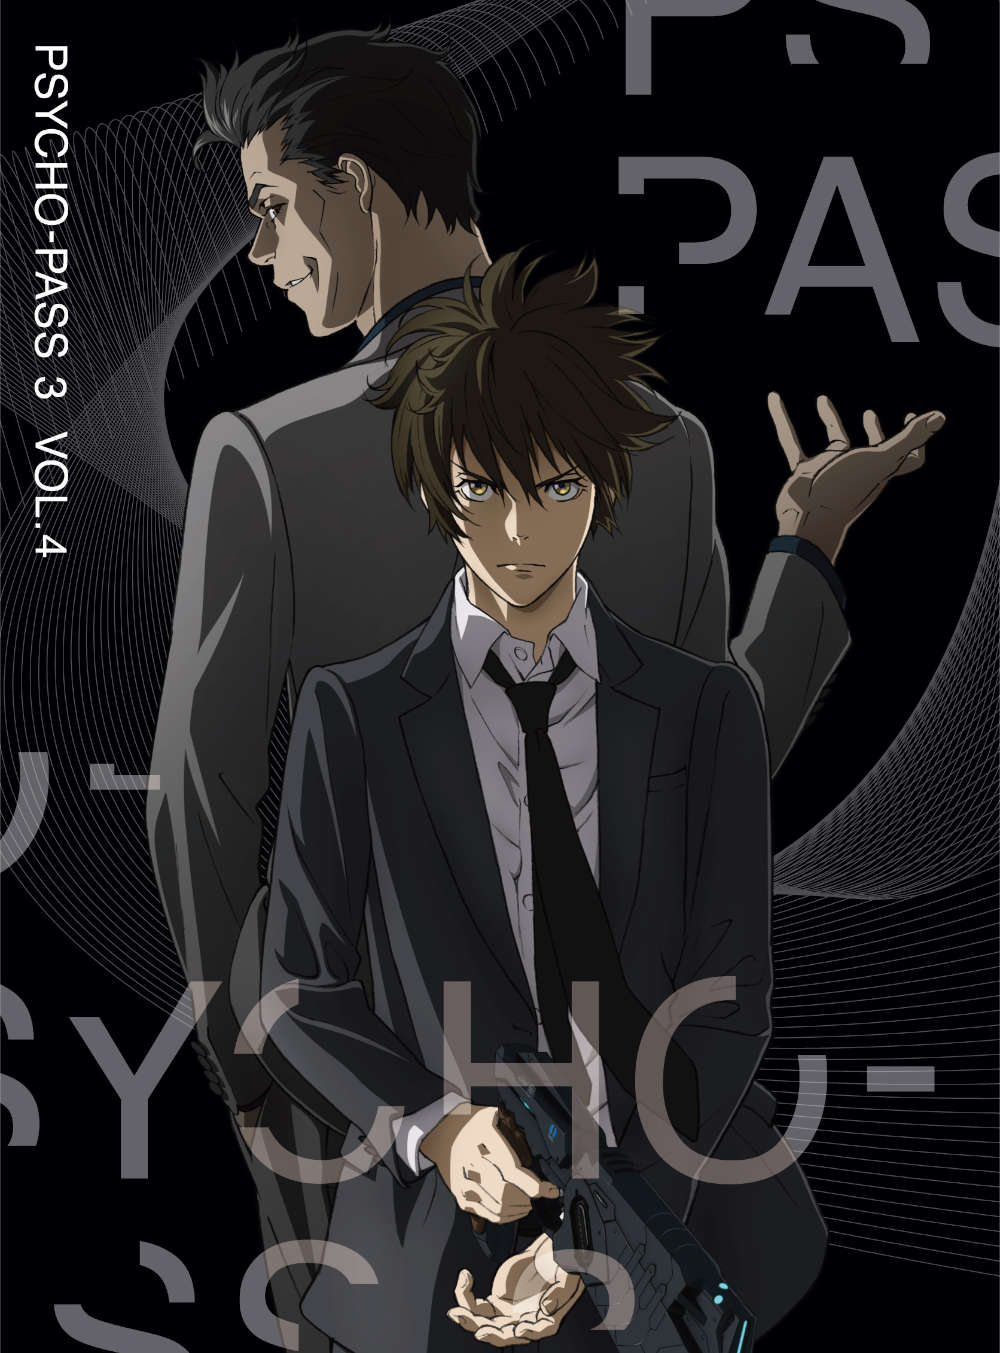 PSYCHO-PASS サイコパス 3 Vol.4 Blu-ray 初回生産限定版(Blu-ray Vol 